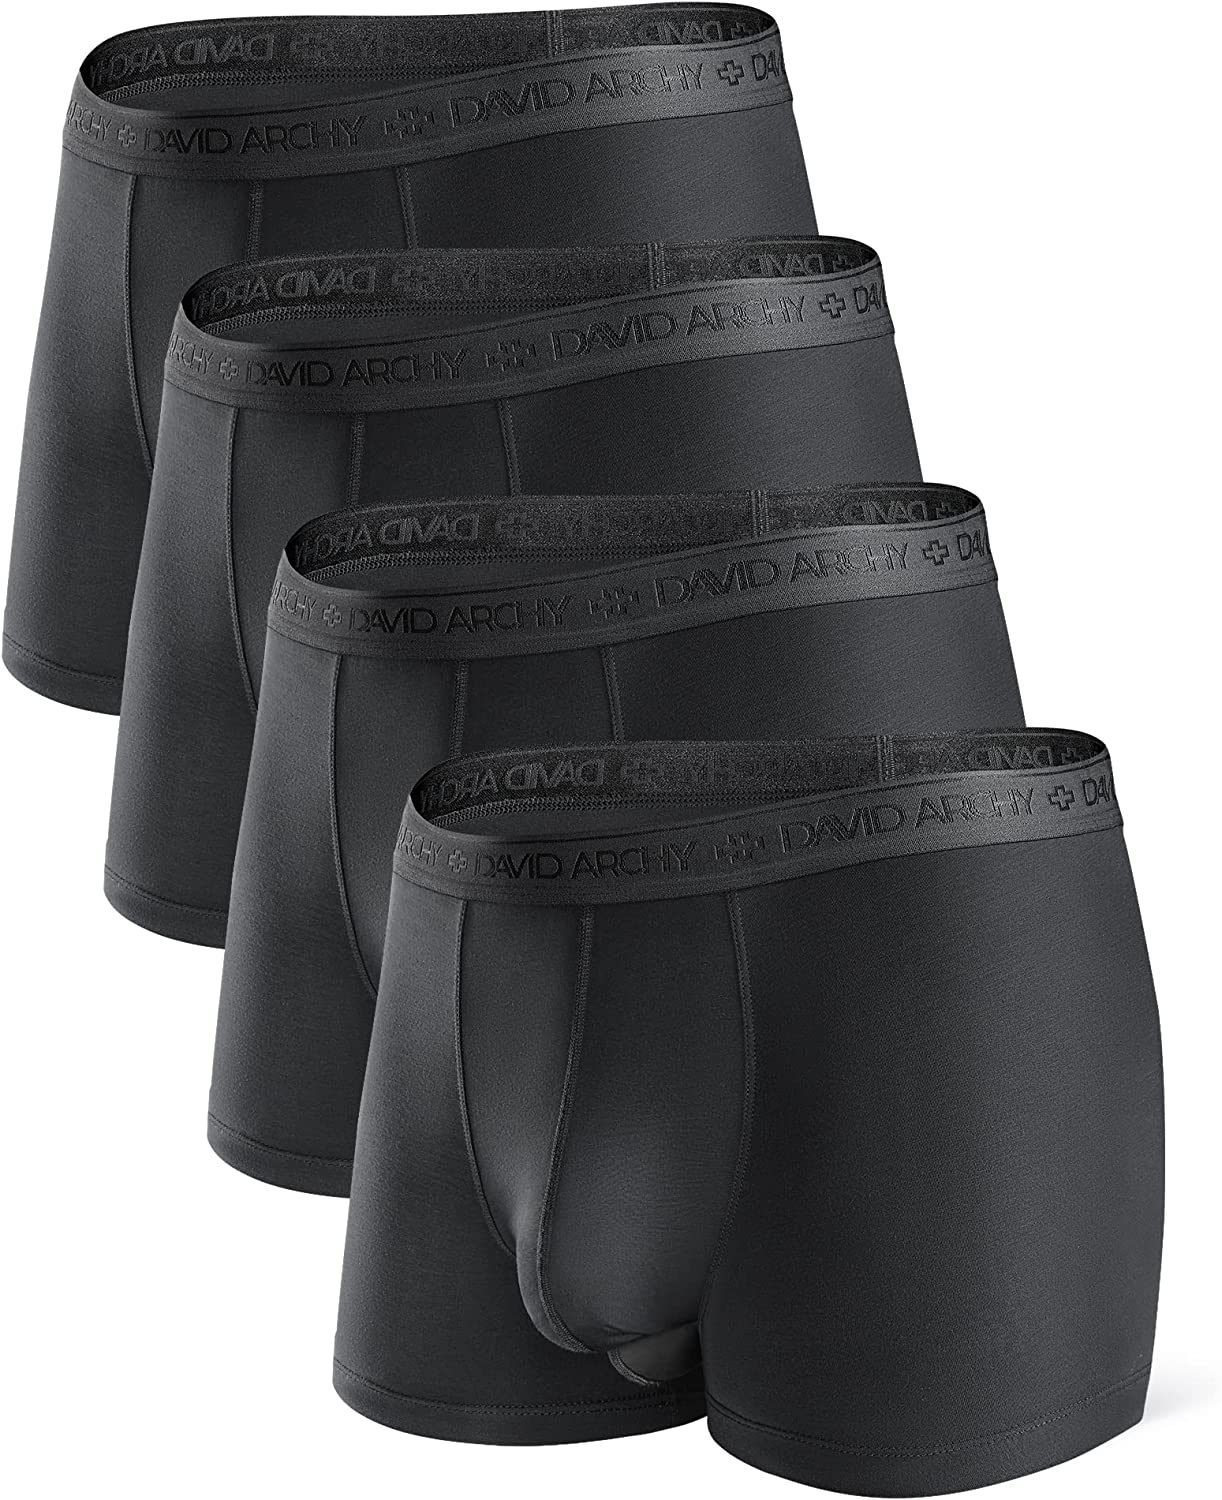 ZONBAILON 3 Pack Men's Dual Pouch Underwear Short Legs Bulge Boxer Briefs  Separated Pouch Modal Trunks Black M : : Clothing, Shoes &  Accessories